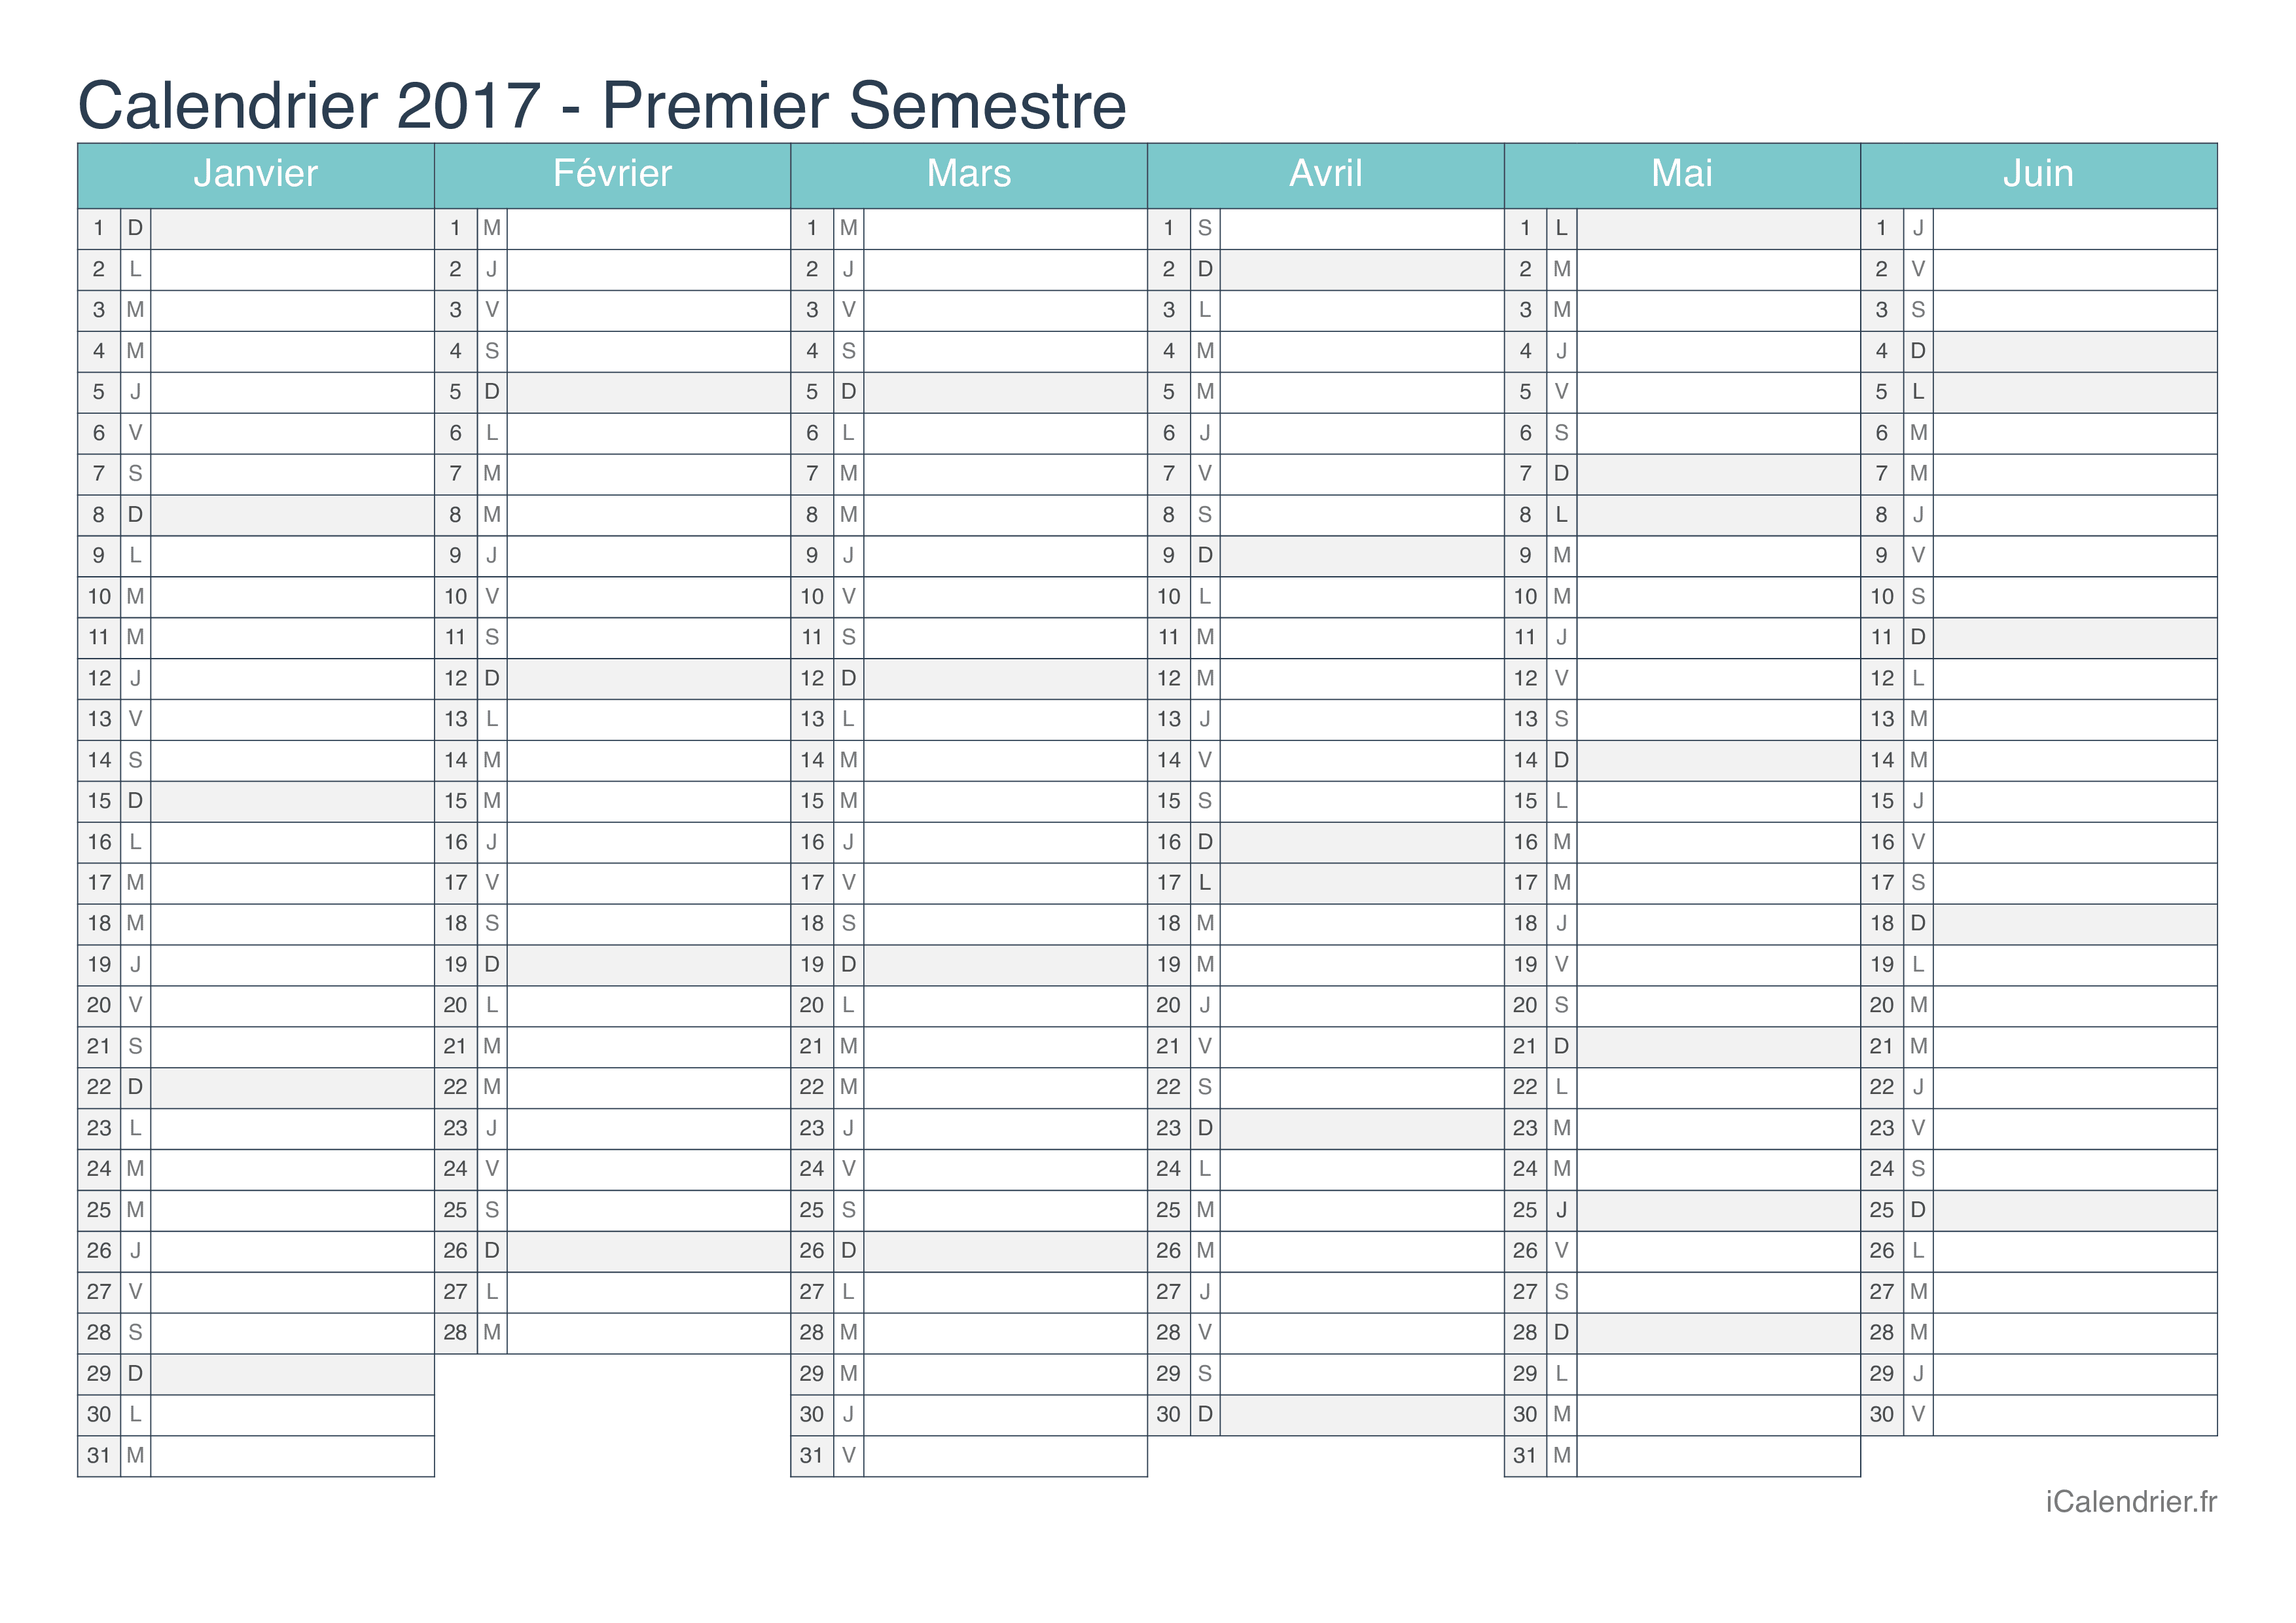 Calendrier par semestre 2017 - Turquoise